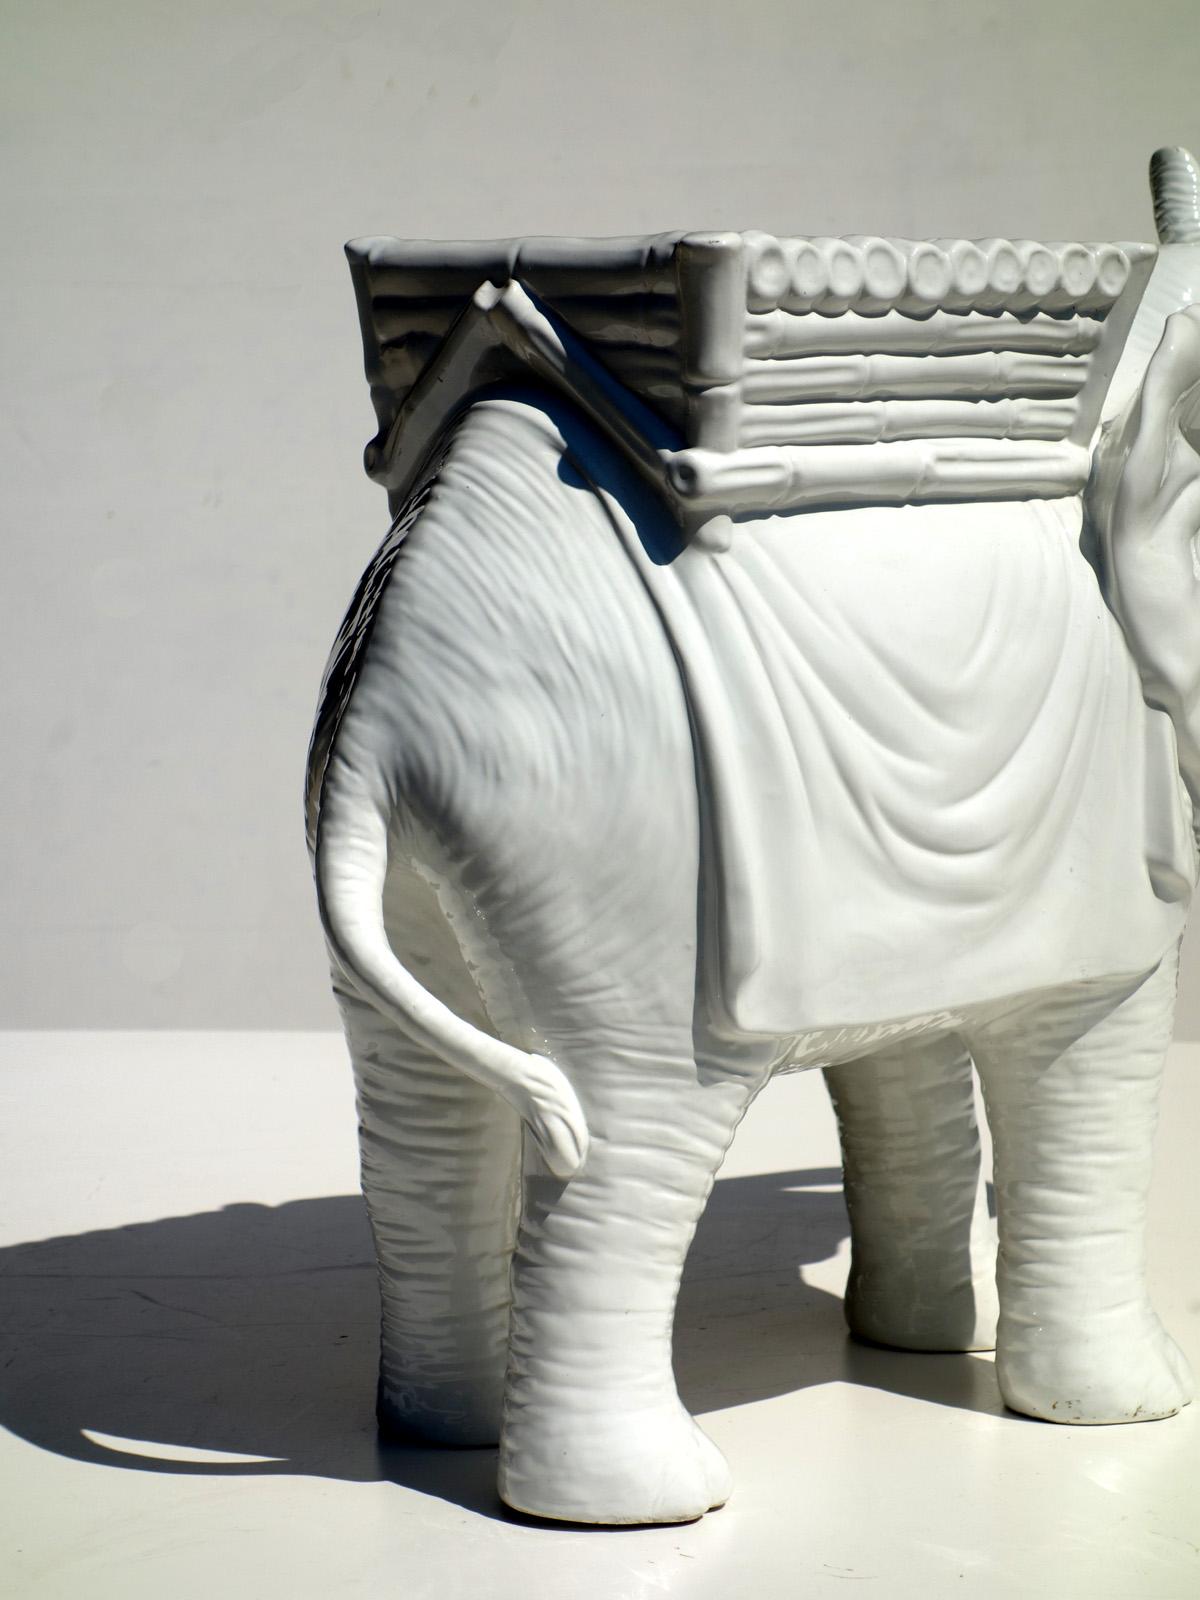 ceramic elephants